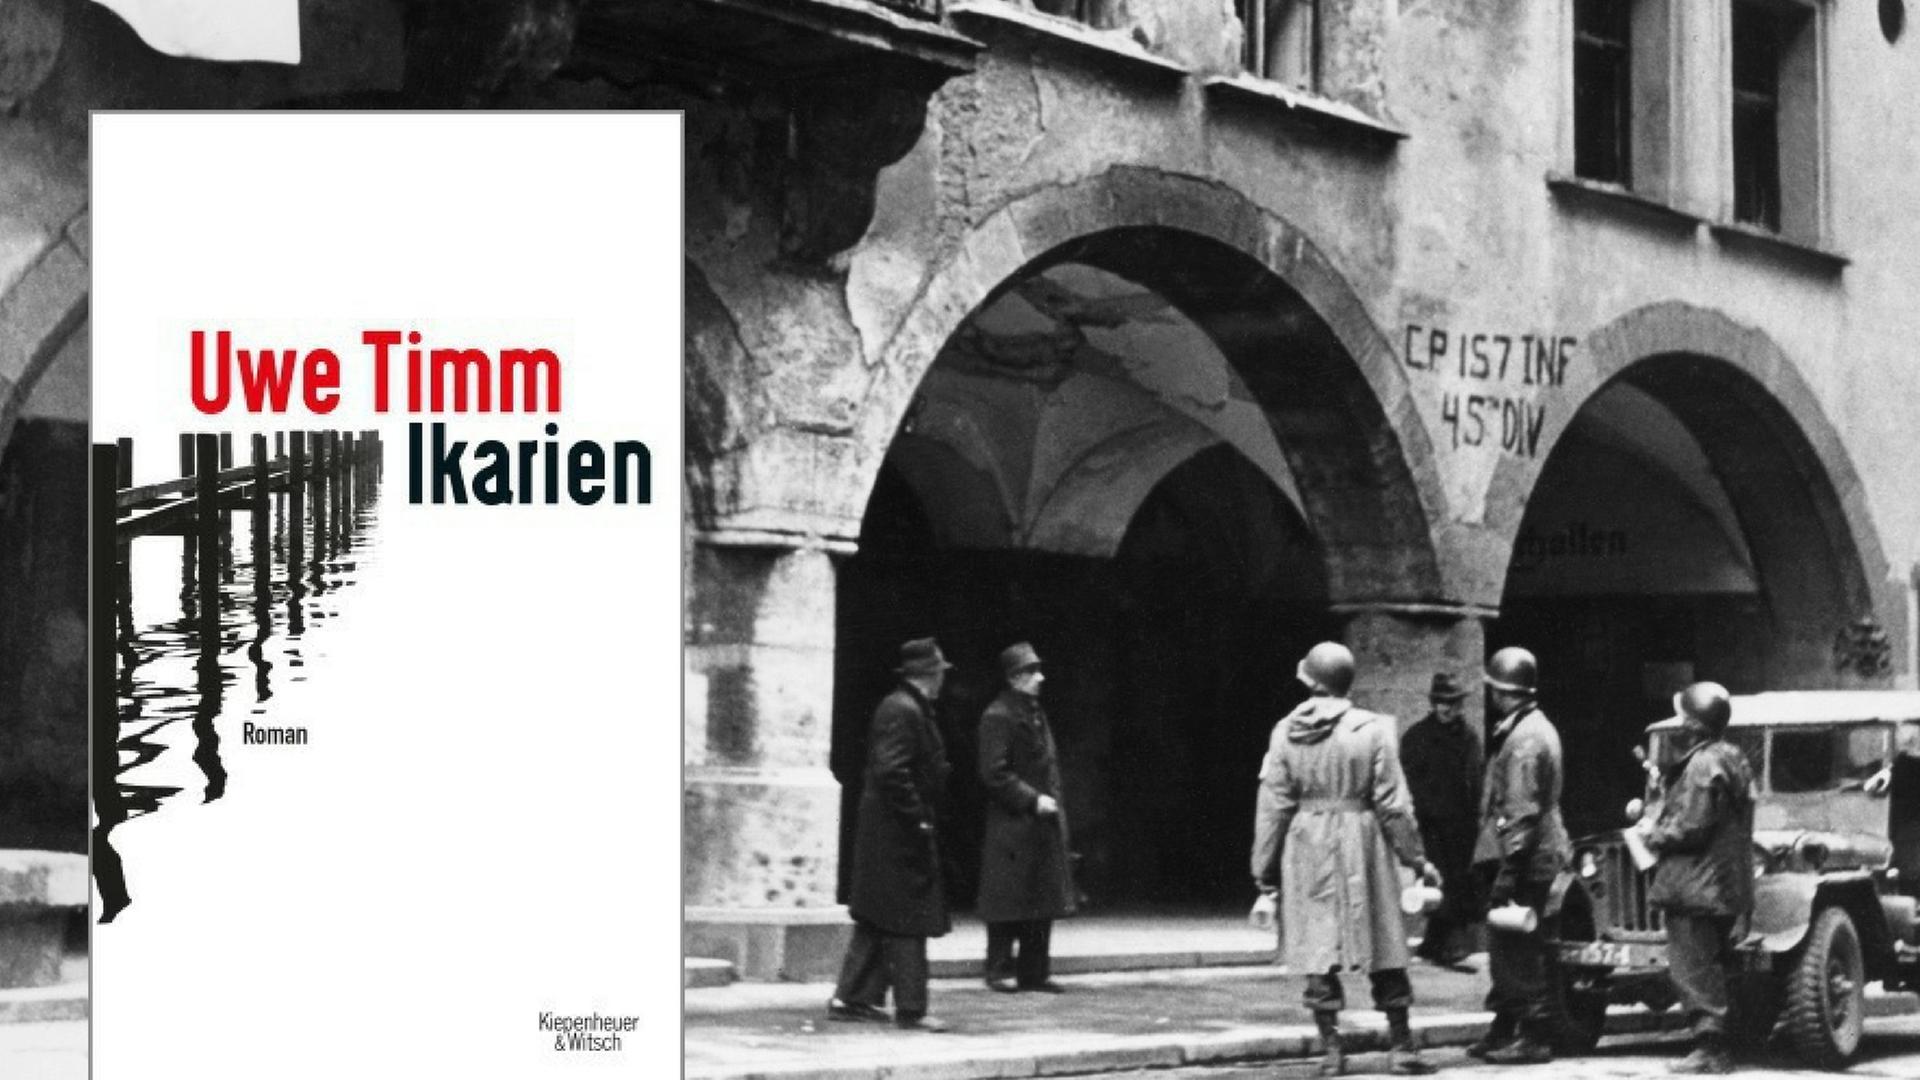 Soldaten der US-Armee stehen am 07.05.1945 vor dem stark beschädigten Hofbräuhaus in München. Dazu das Buchcover von Uwe Timms Buch "Ikarien".